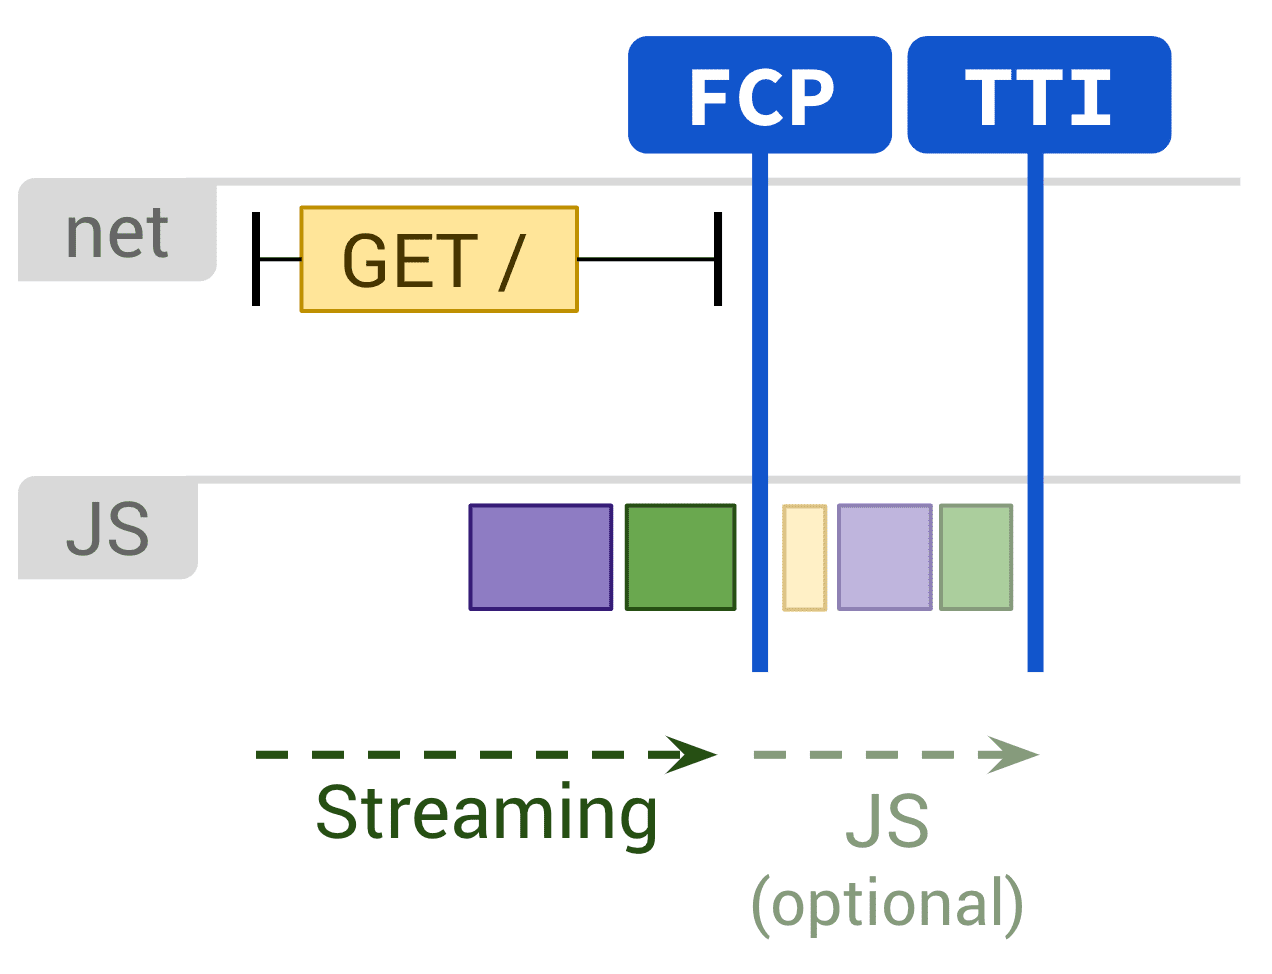 Sơ đồ cho thấy phương thức kết xuất tĩnh và thực thi JS không bắt buộc ảnh hưởng đến FCP và TTI.